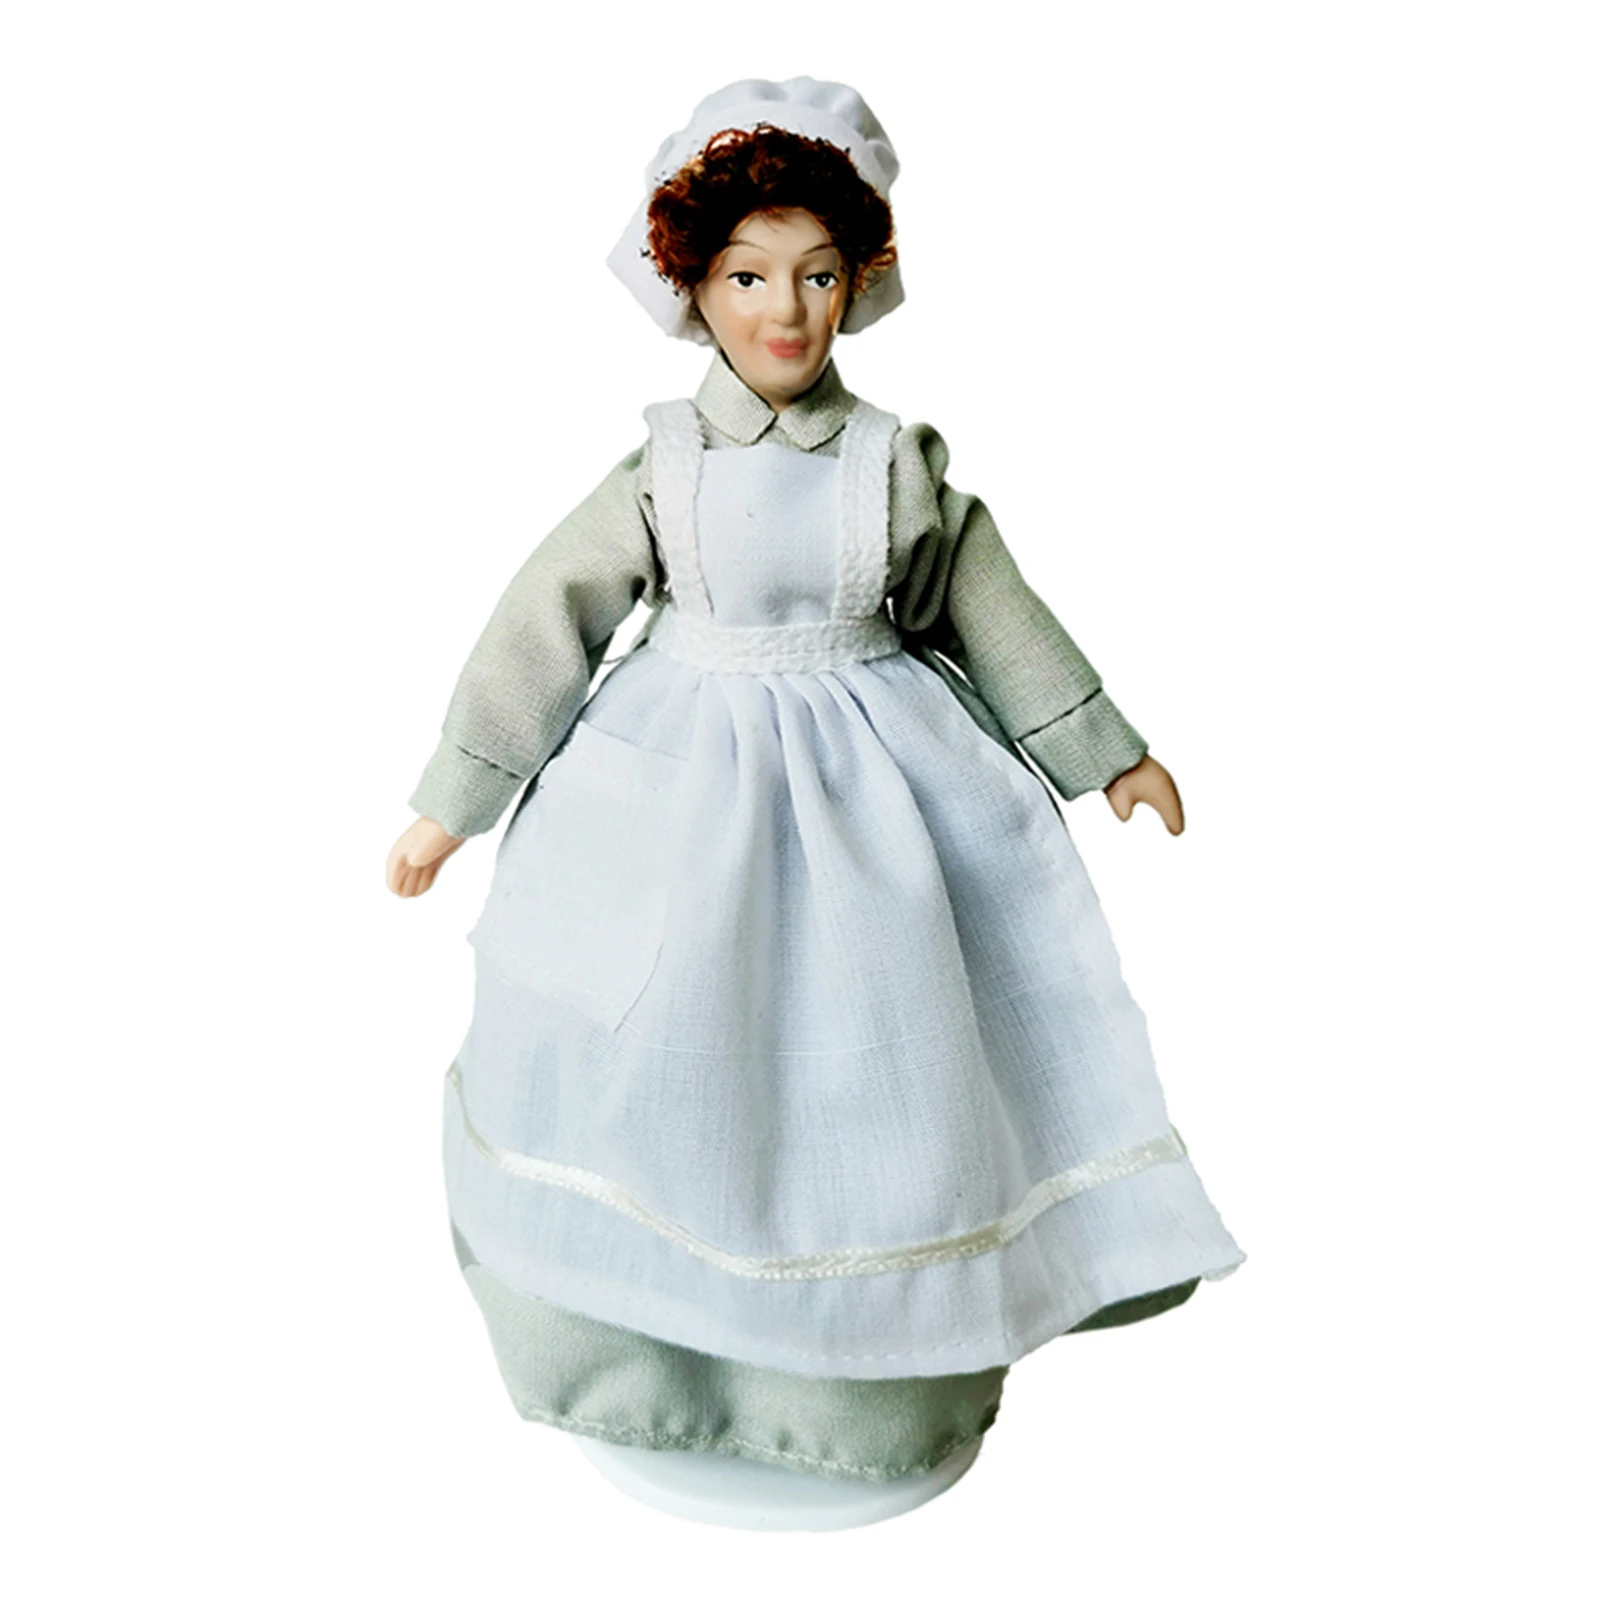 Vintage 1:12 Scale Miniature Porcelain Doll Model Little Beautiful Toys